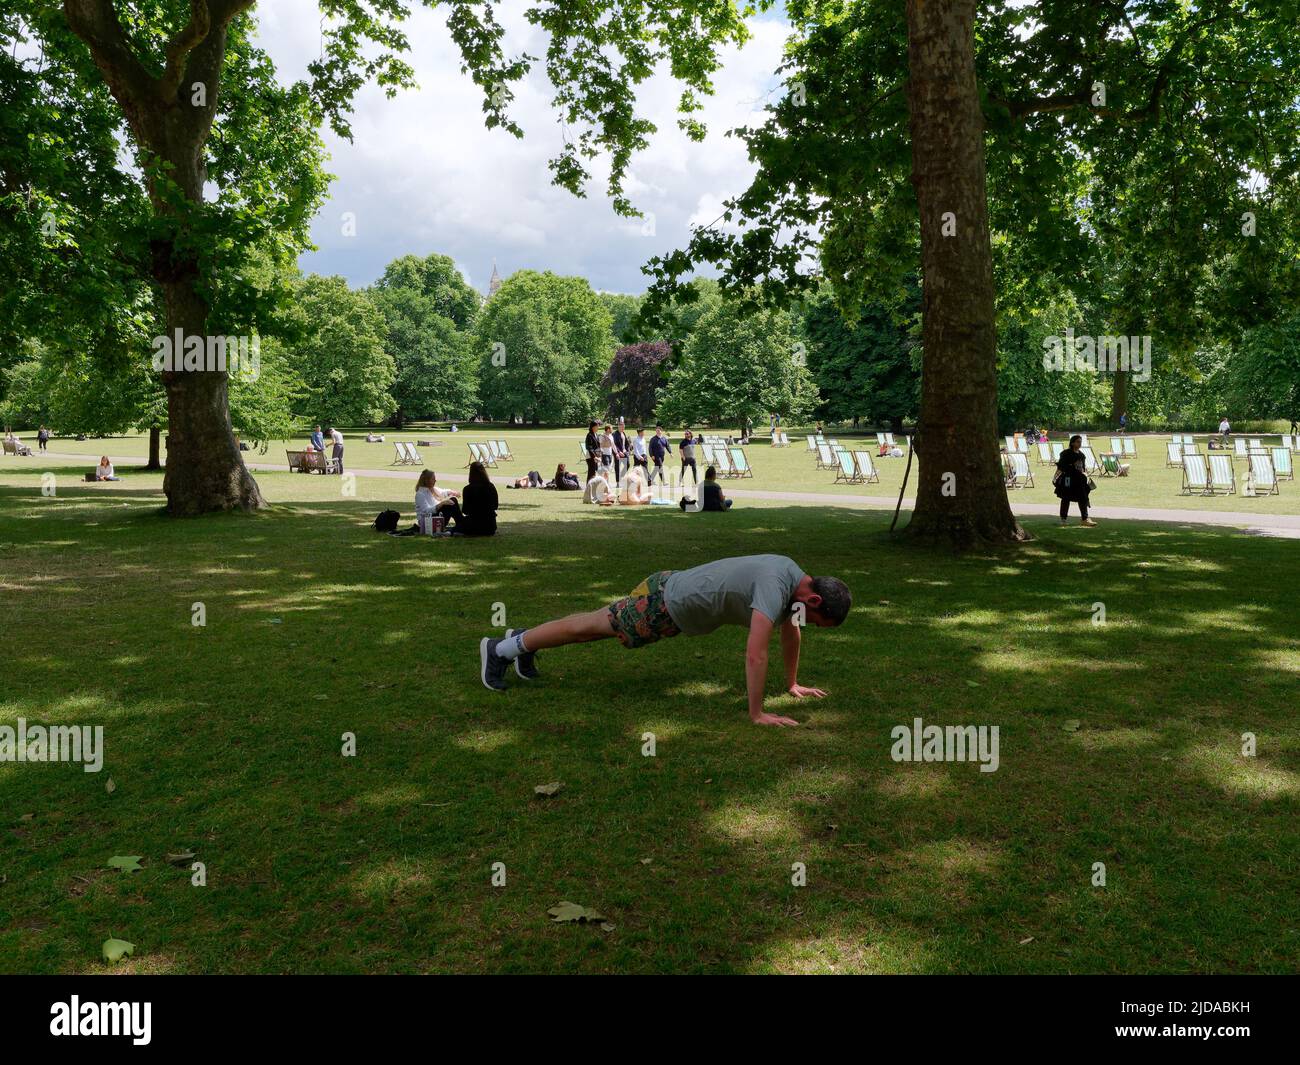 London, Greater London, England, 08 2022. Juni: Mann trainiert im Green Park, während sich die Menschen hinter dem Park entspannen und Liegestühle im Park verstreut sind. Stockfoto